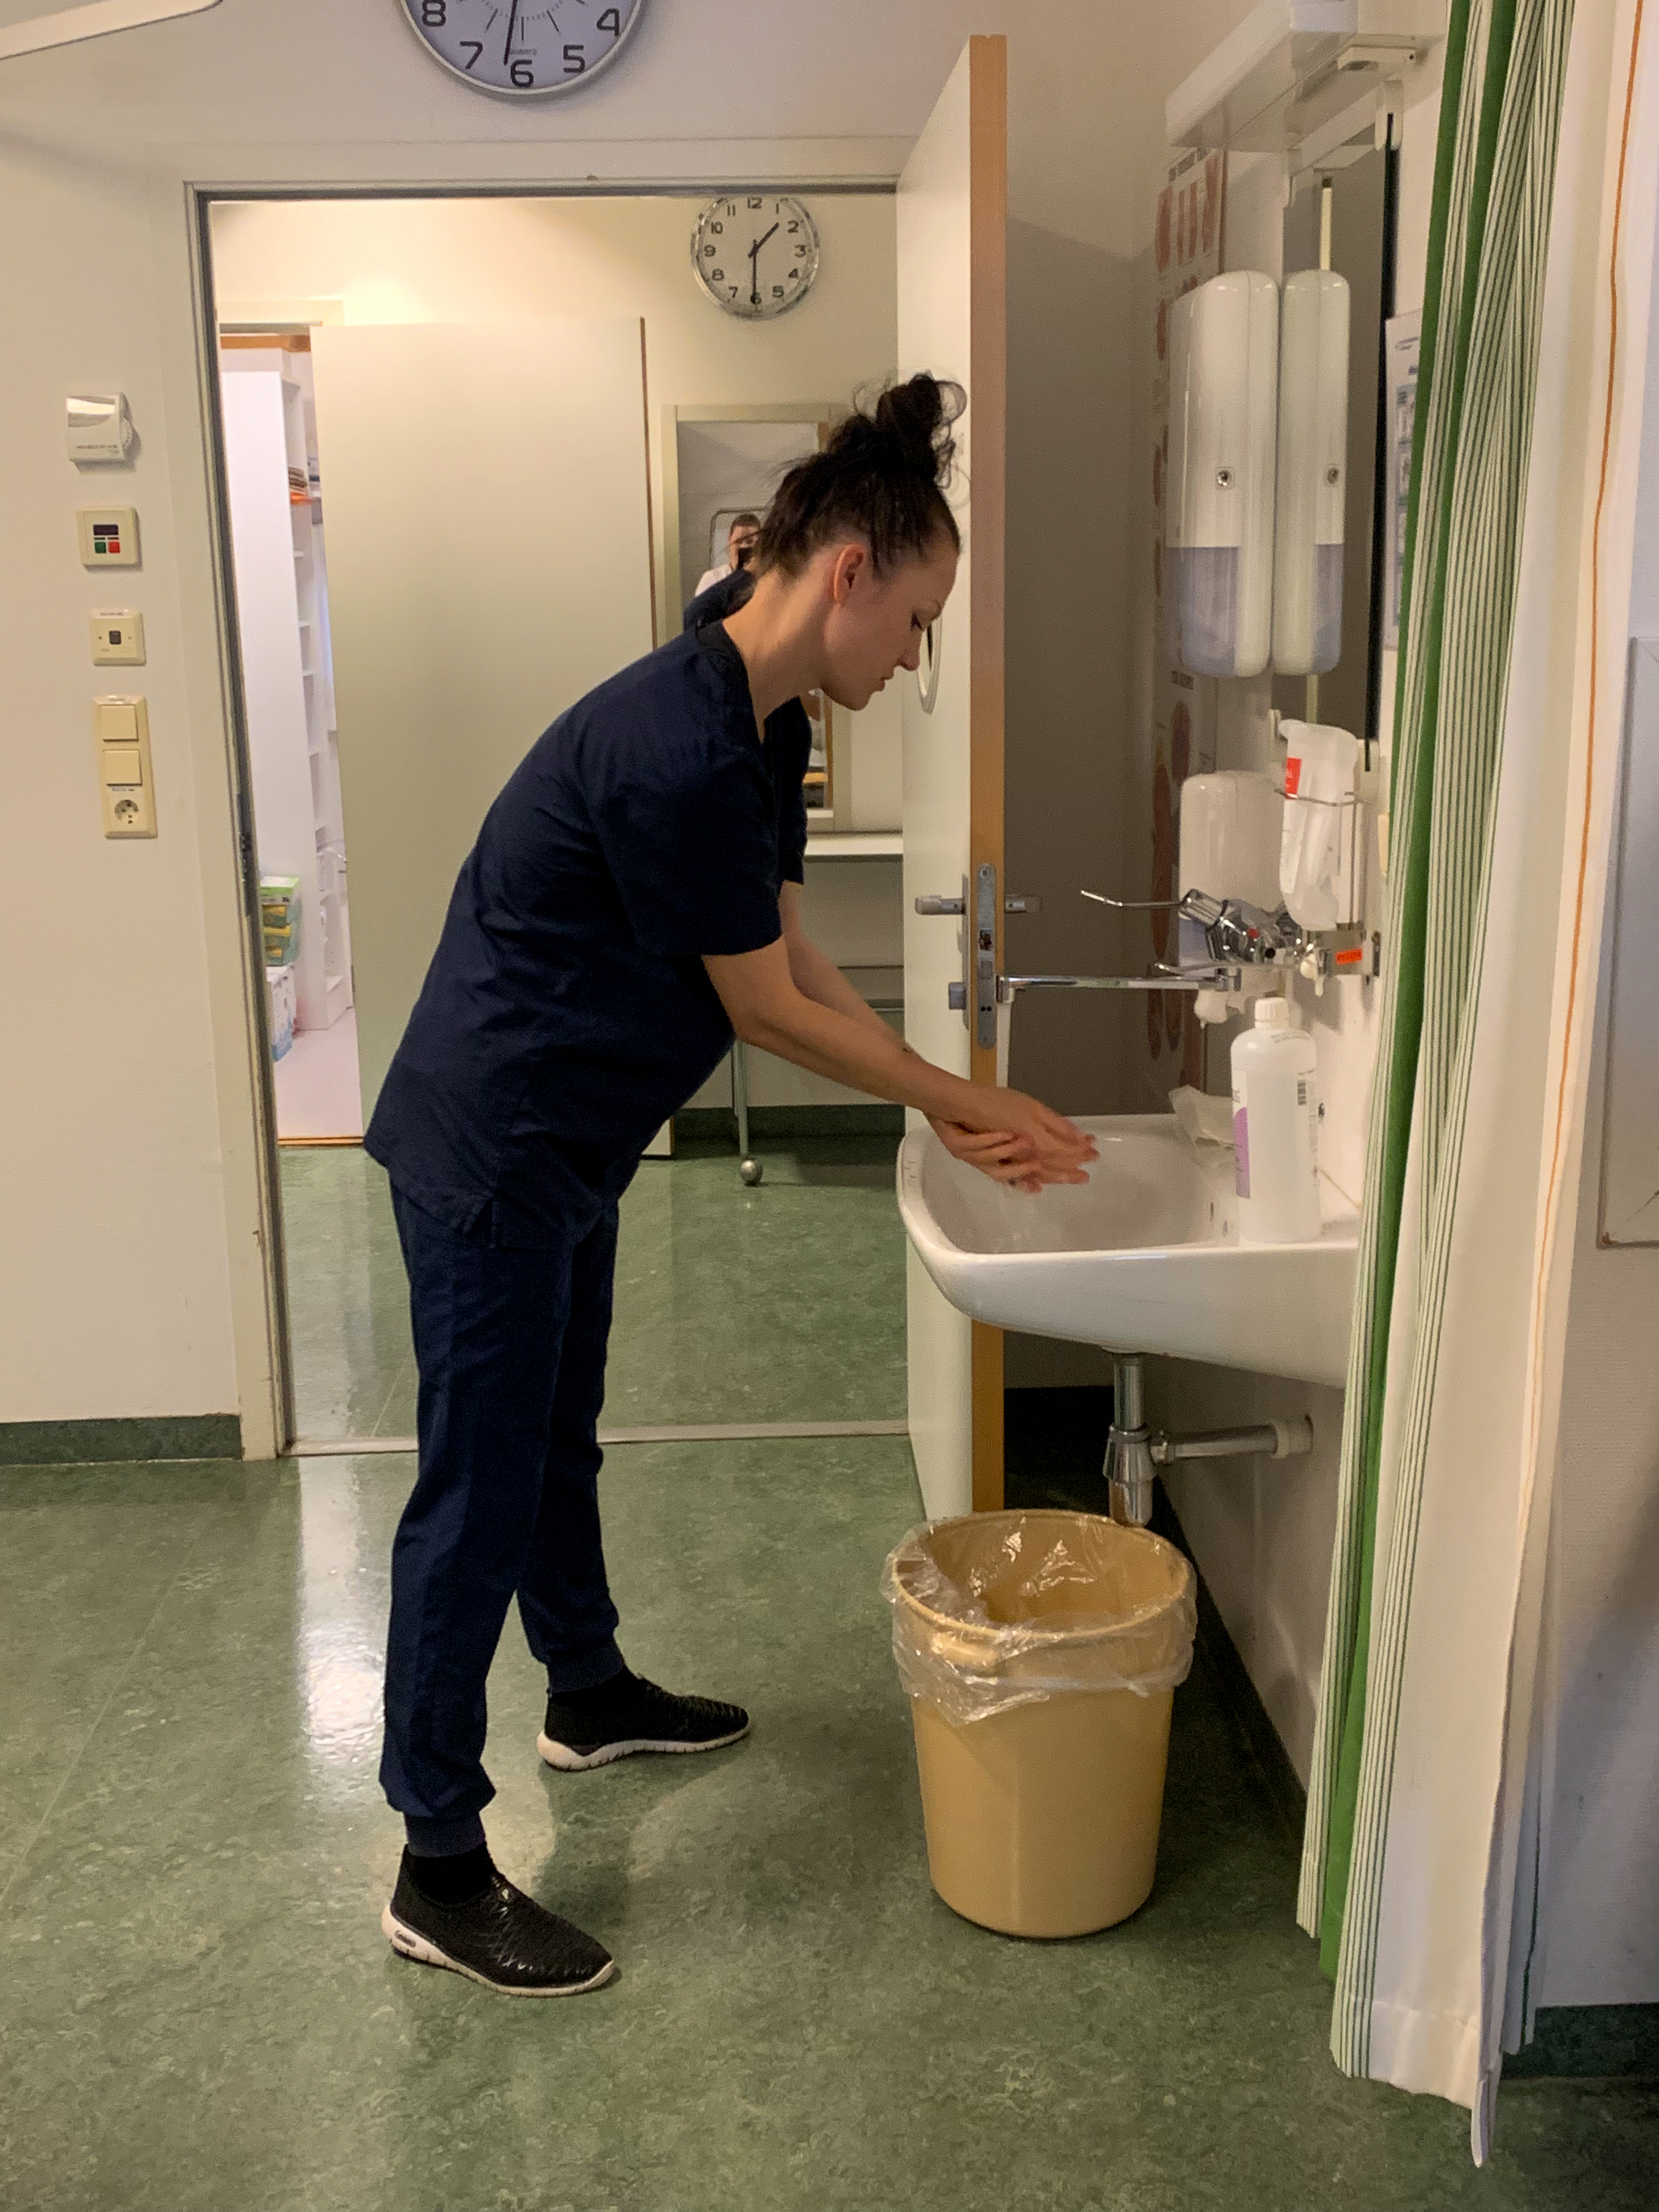 Sykepleierstudent viser korrekt håndvask i ferdighetstrening